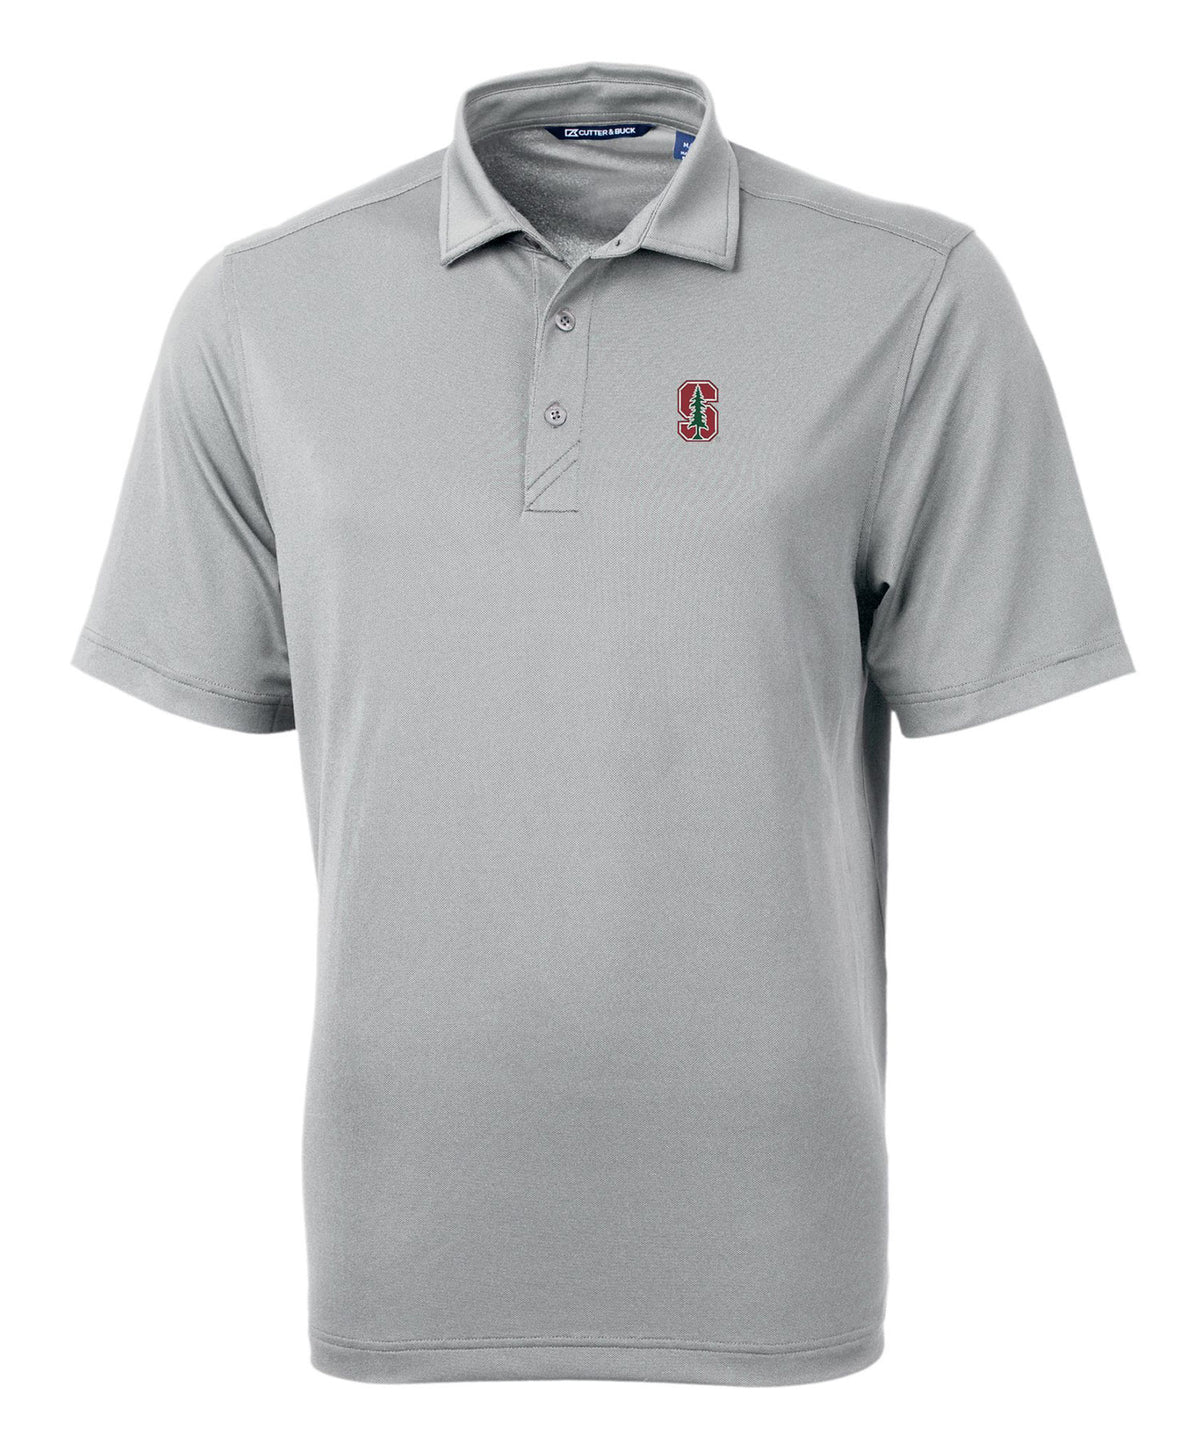 Cutter & Buck Stanford University Cardinal Short Sleeve Polo Knit Shirt, Men's Big & Tall